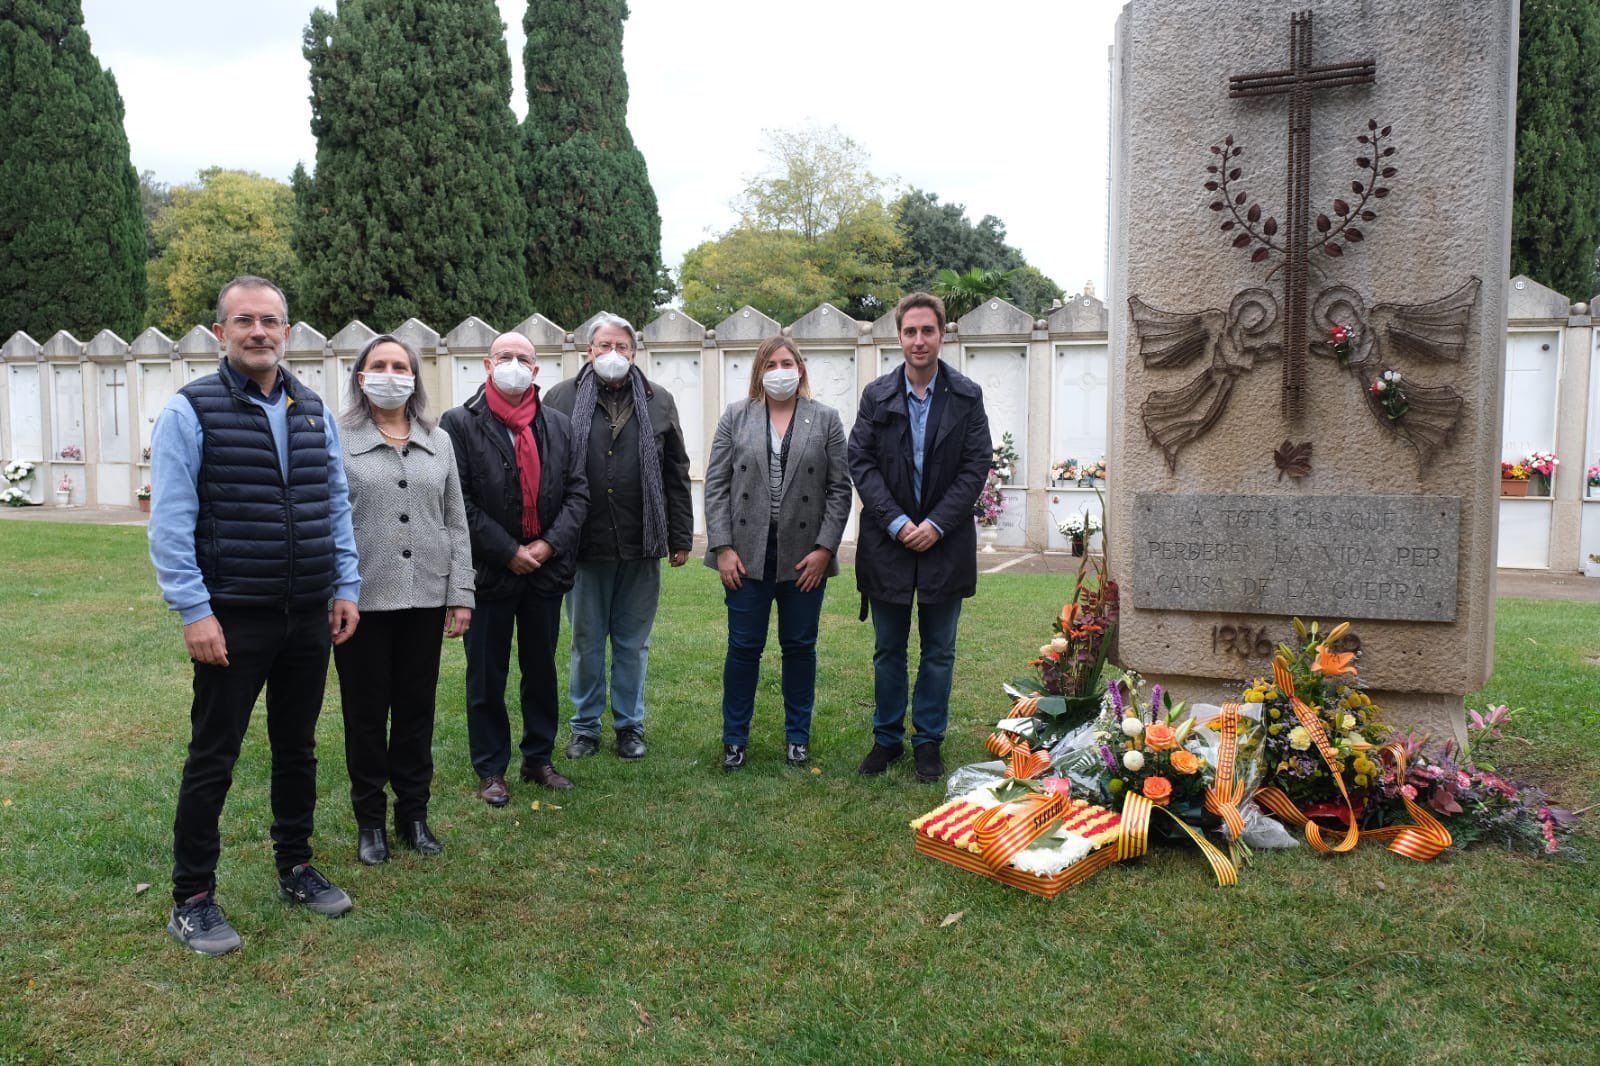 Record per a les víctimes de la guerra del 36 i els represaliats pel franquisme a Figueres per Tots Sants